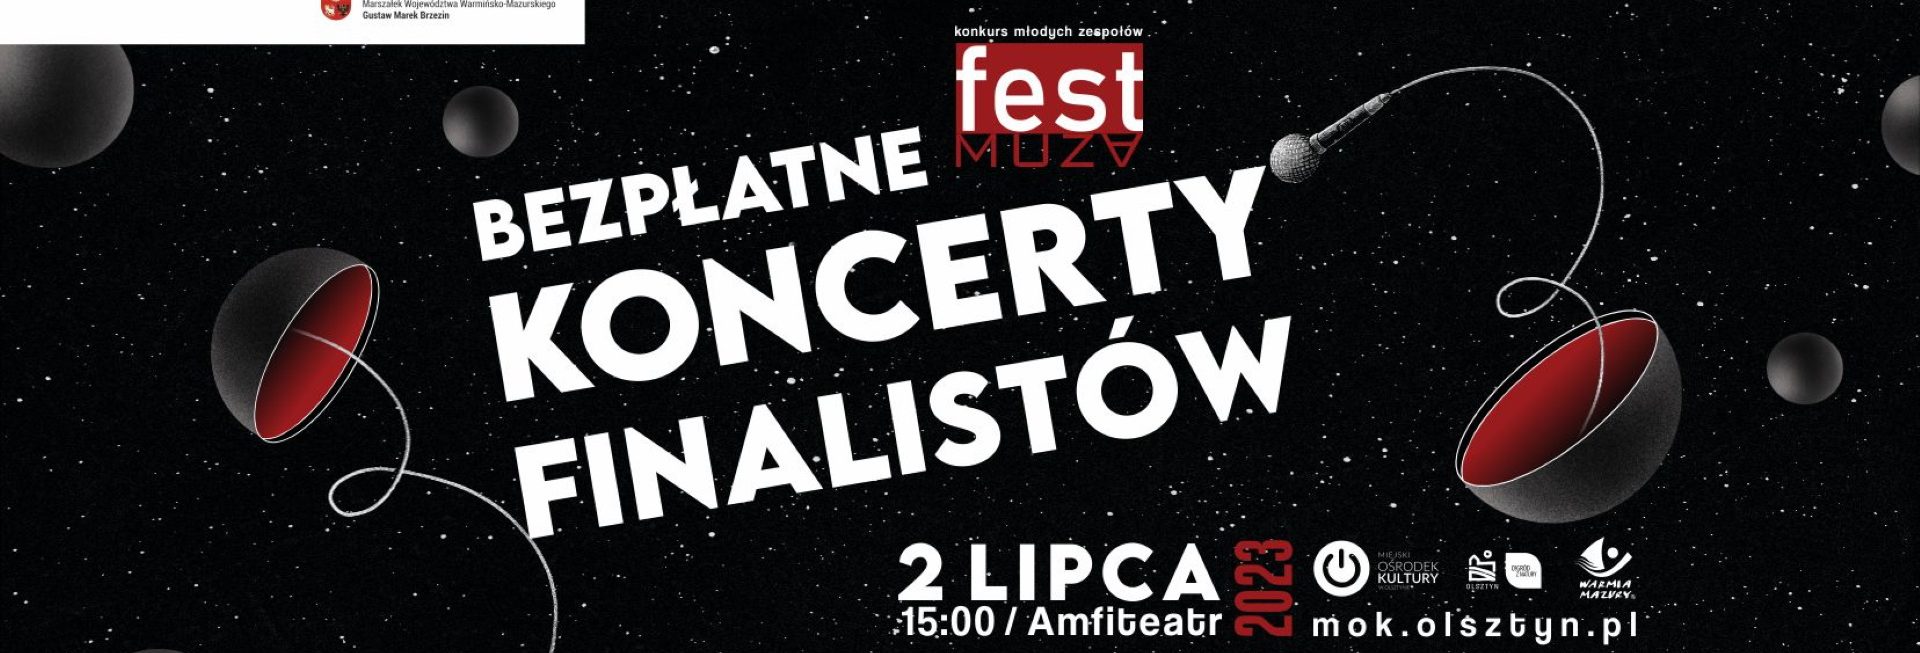 Plakat zapraszający w niedzielę 2 lipca 2023 r. do Olsztyna na Koncerty Finalistów FEST MUZA Olsztyn 2023.